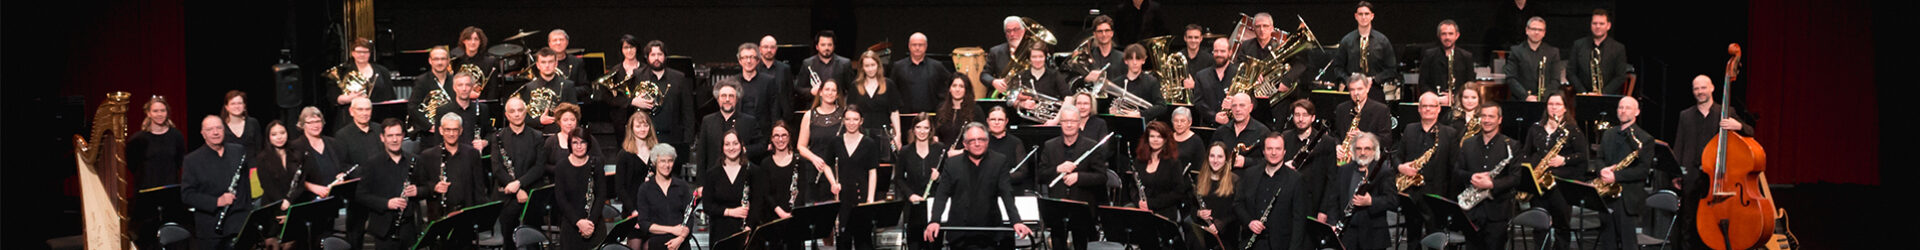 Nantes Philharmonie termine 3e à un concours européen au Luxembourg